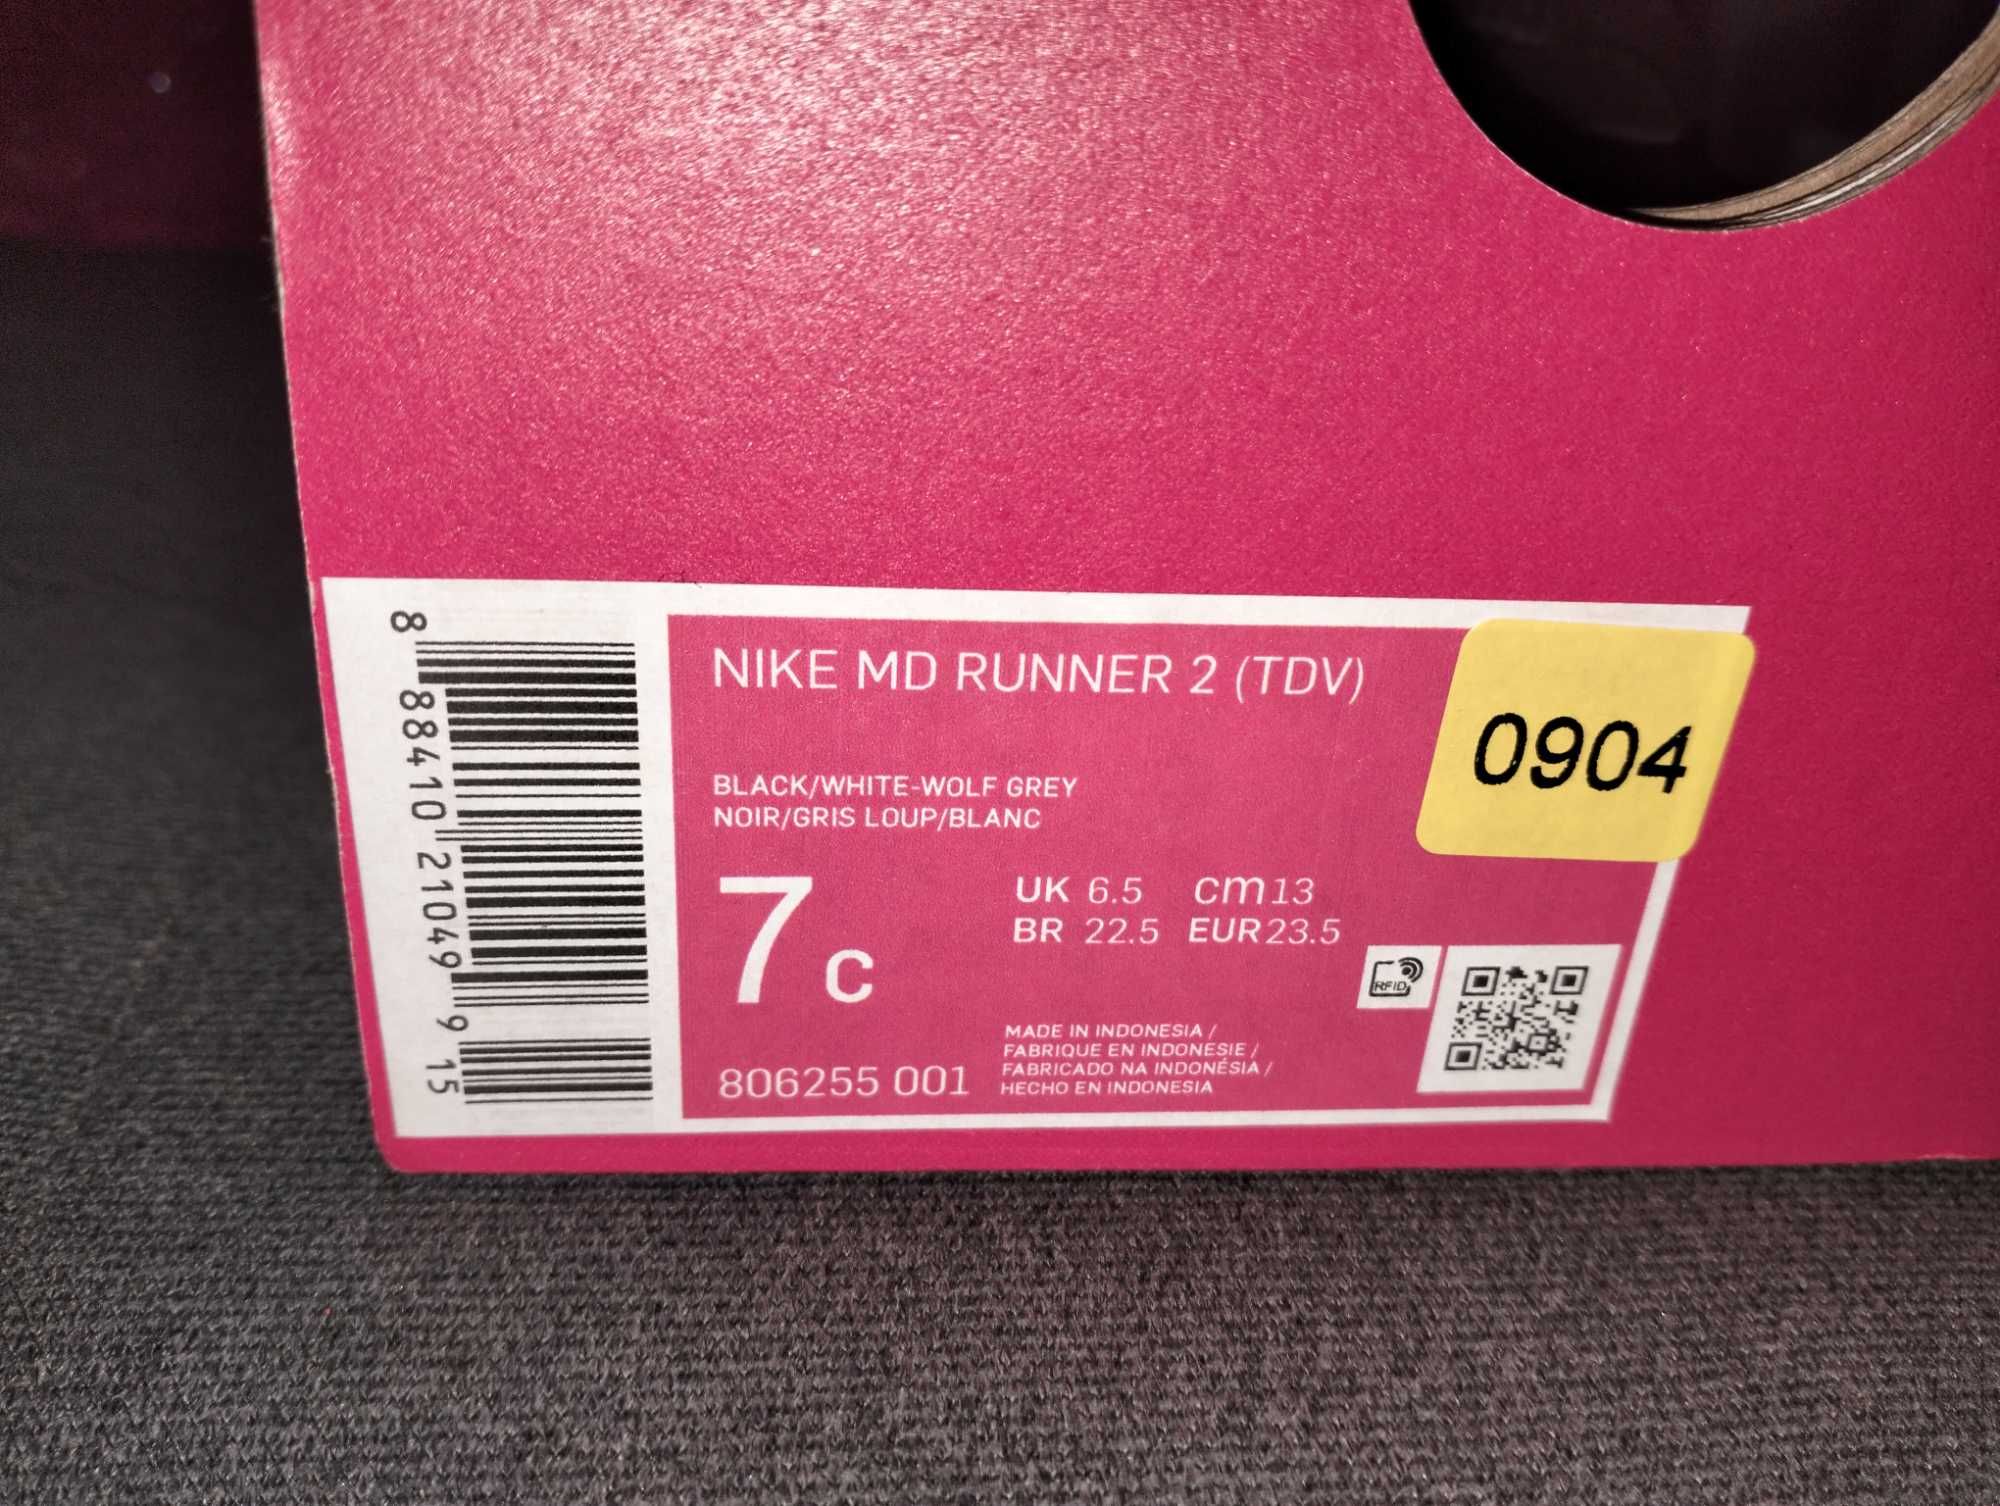 Sprzedam nowe buty firmy Nike